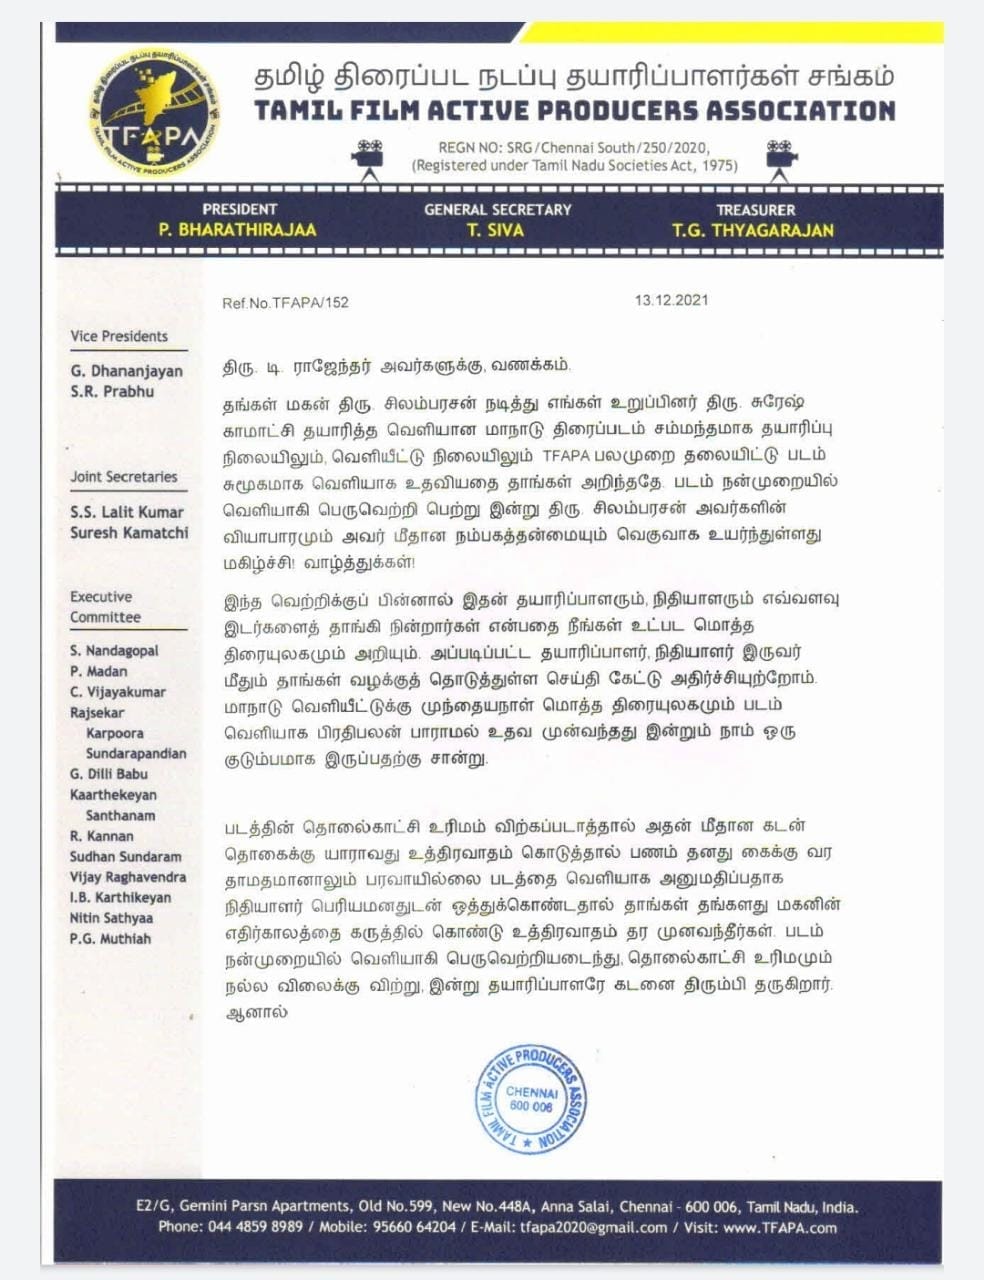 Maanaadu Satellite Rights Bharathi Raja Letter to T Rajender